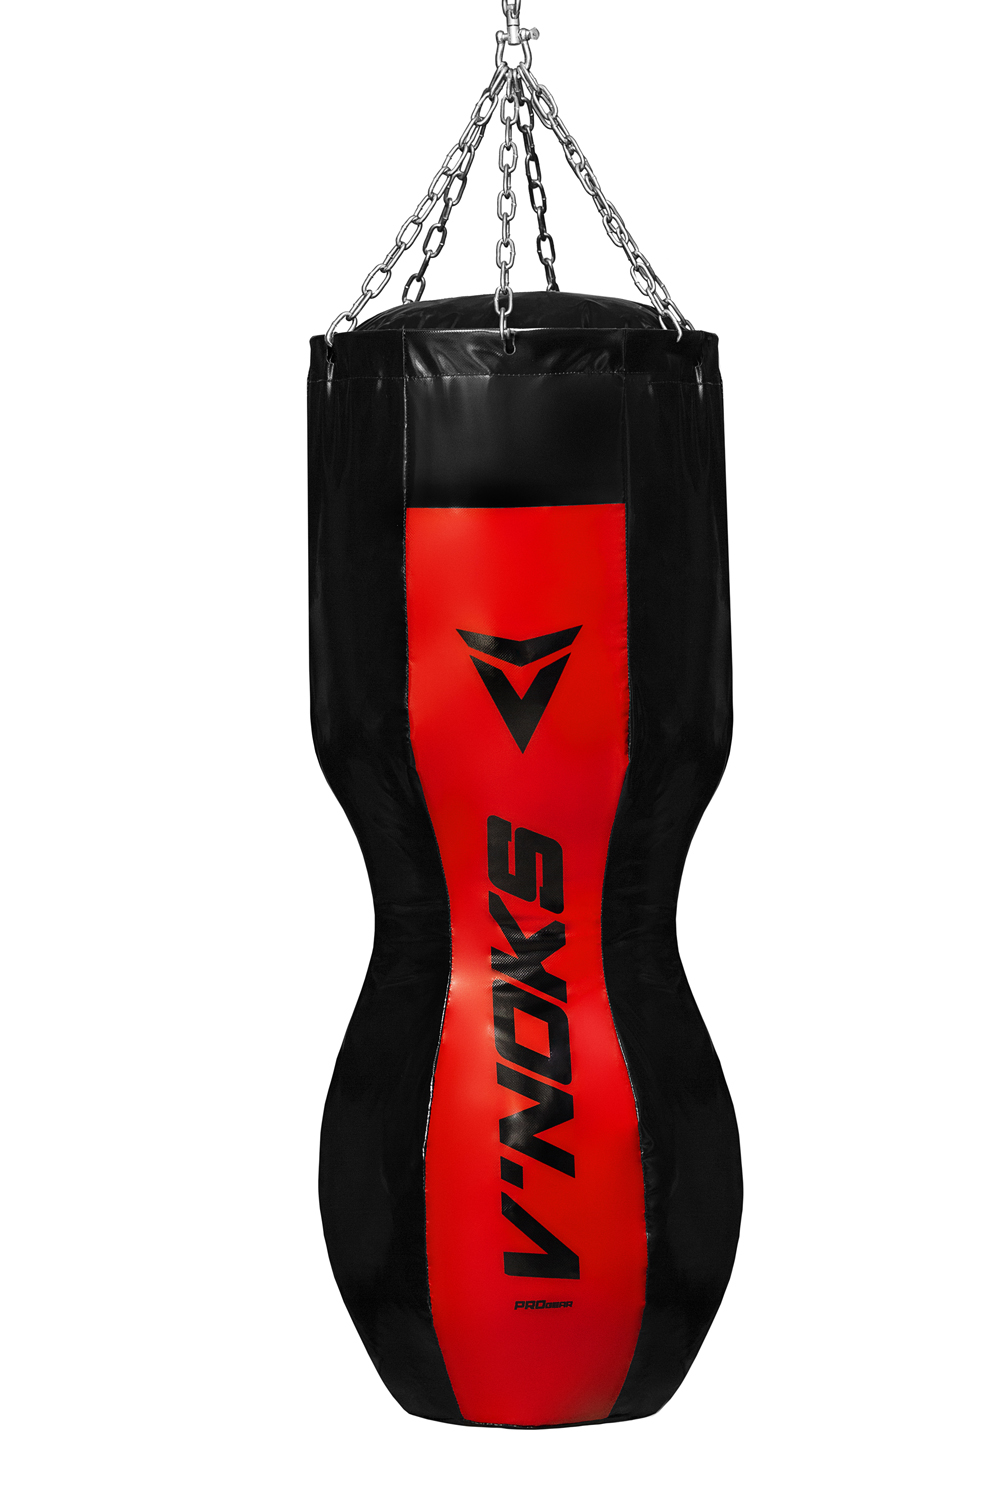 Боксерский мешок силуэт V`Noks Gel Red 1.1 м, 50-60 кг